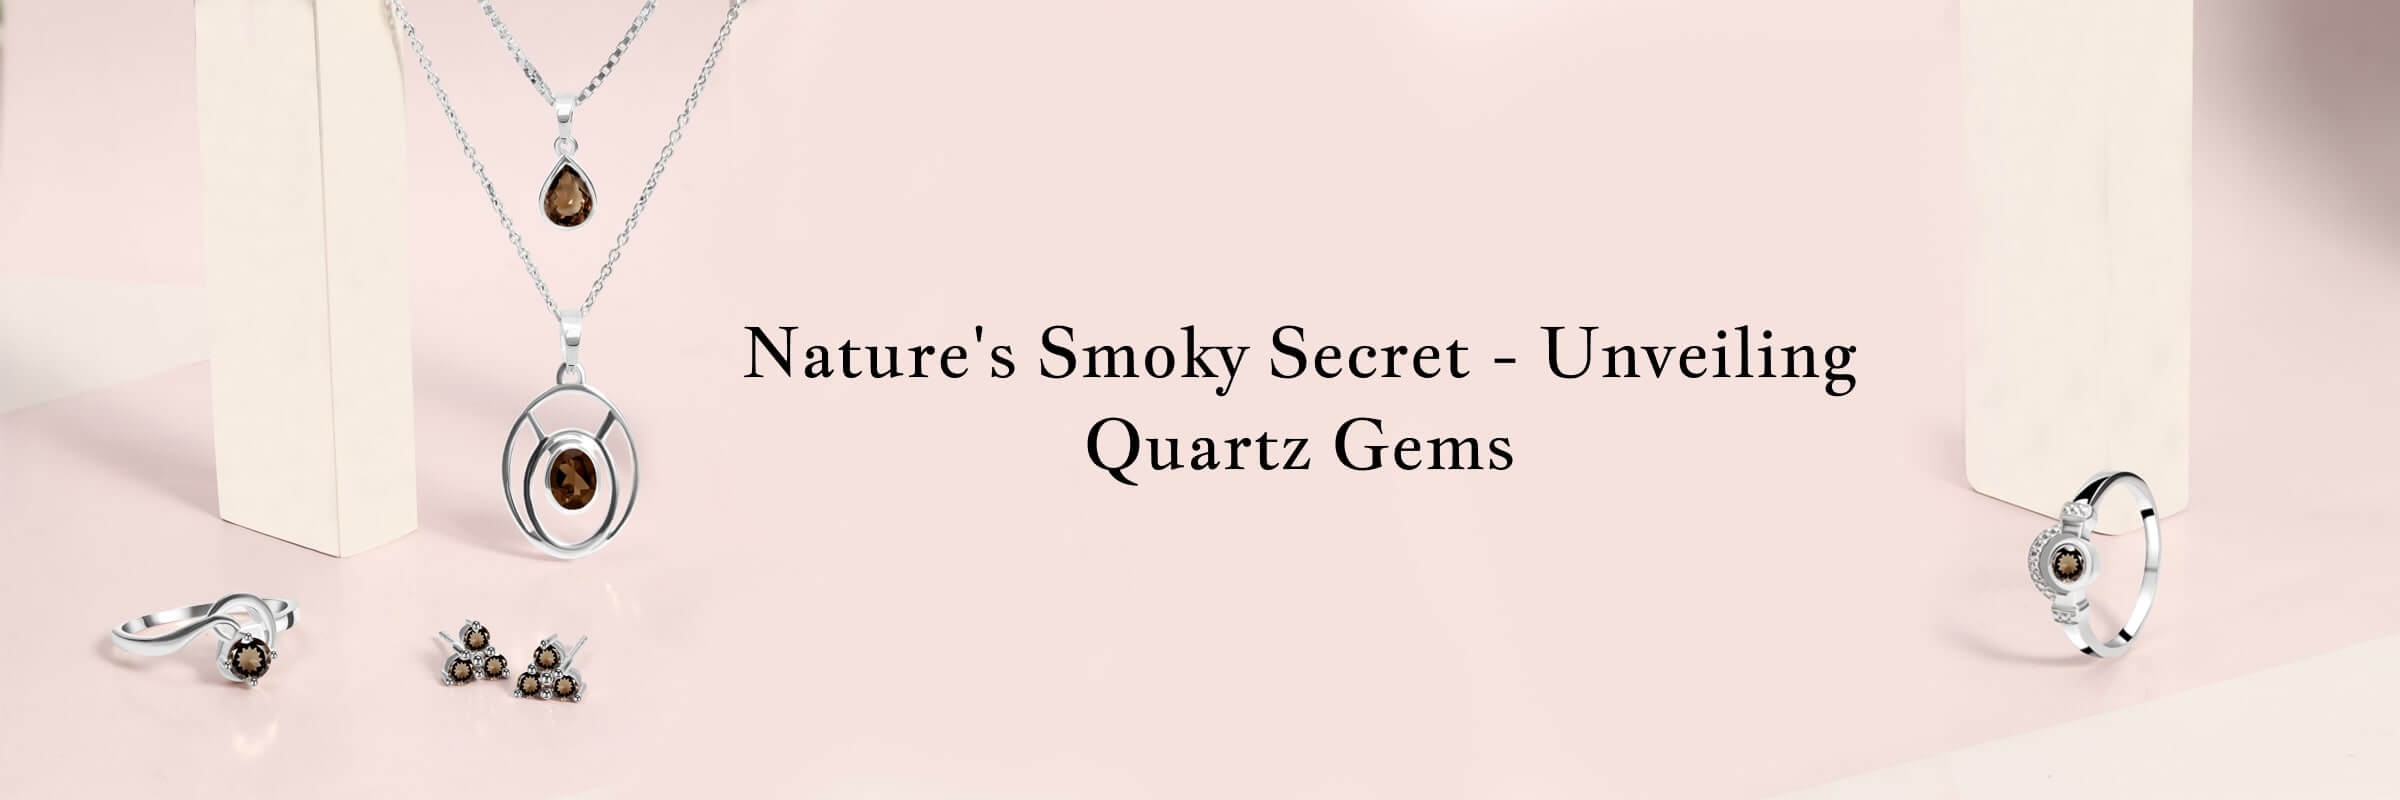 Smoky Quartz Jewelry